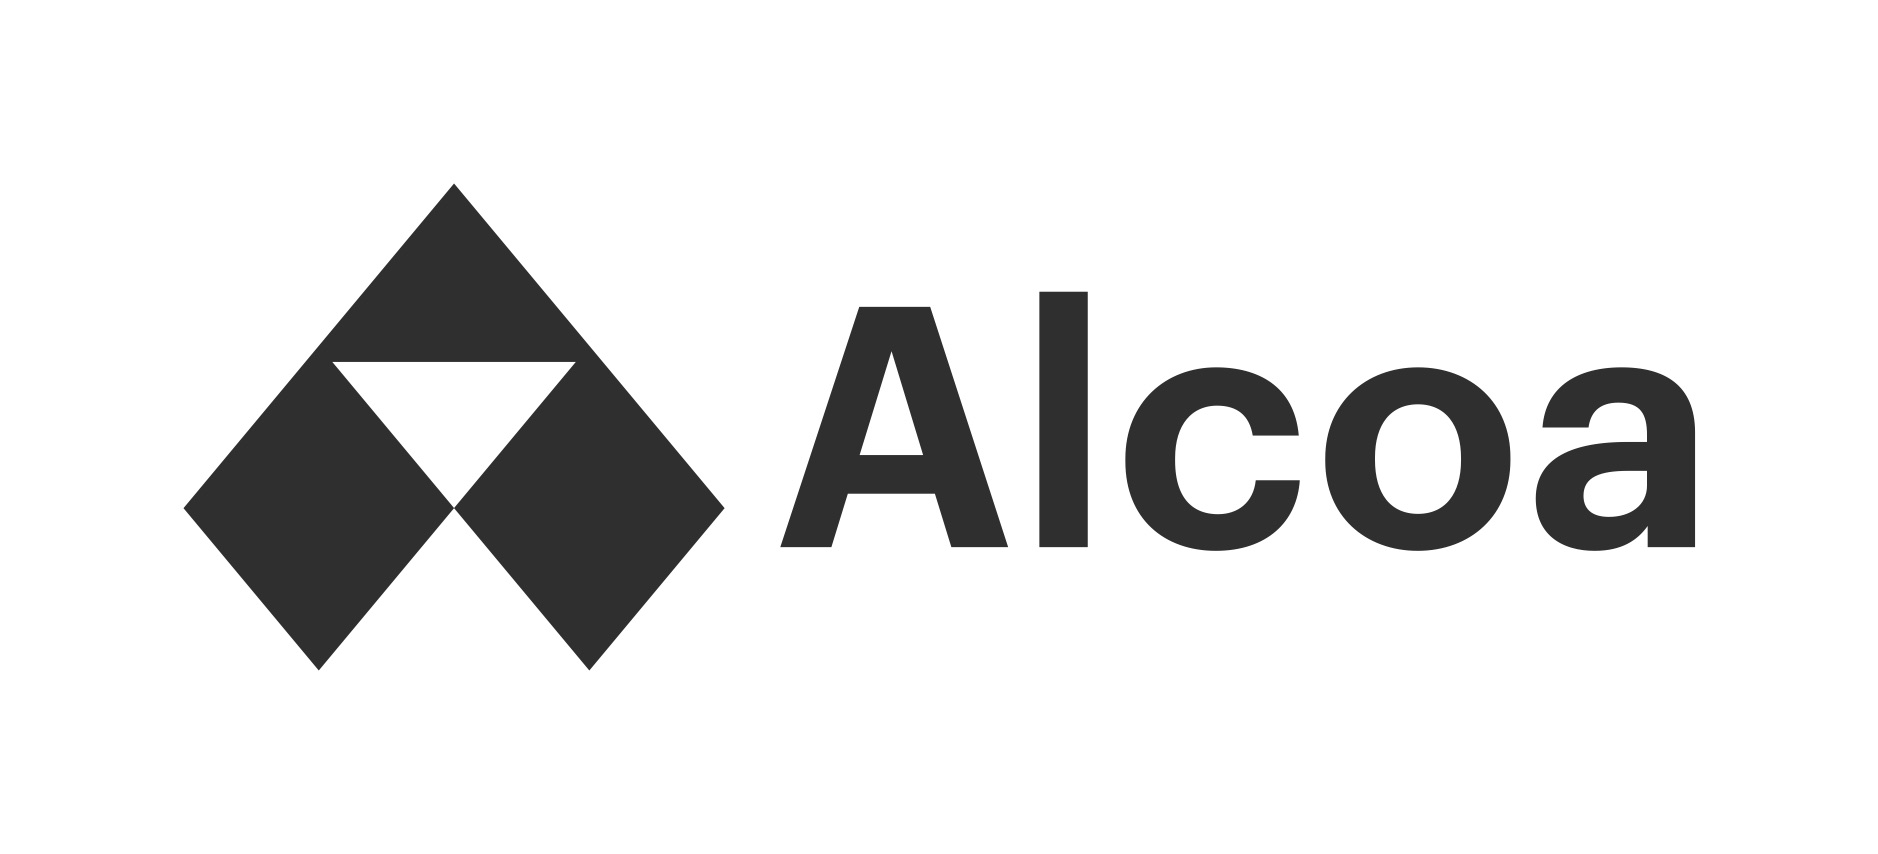 Alcoa - Logo